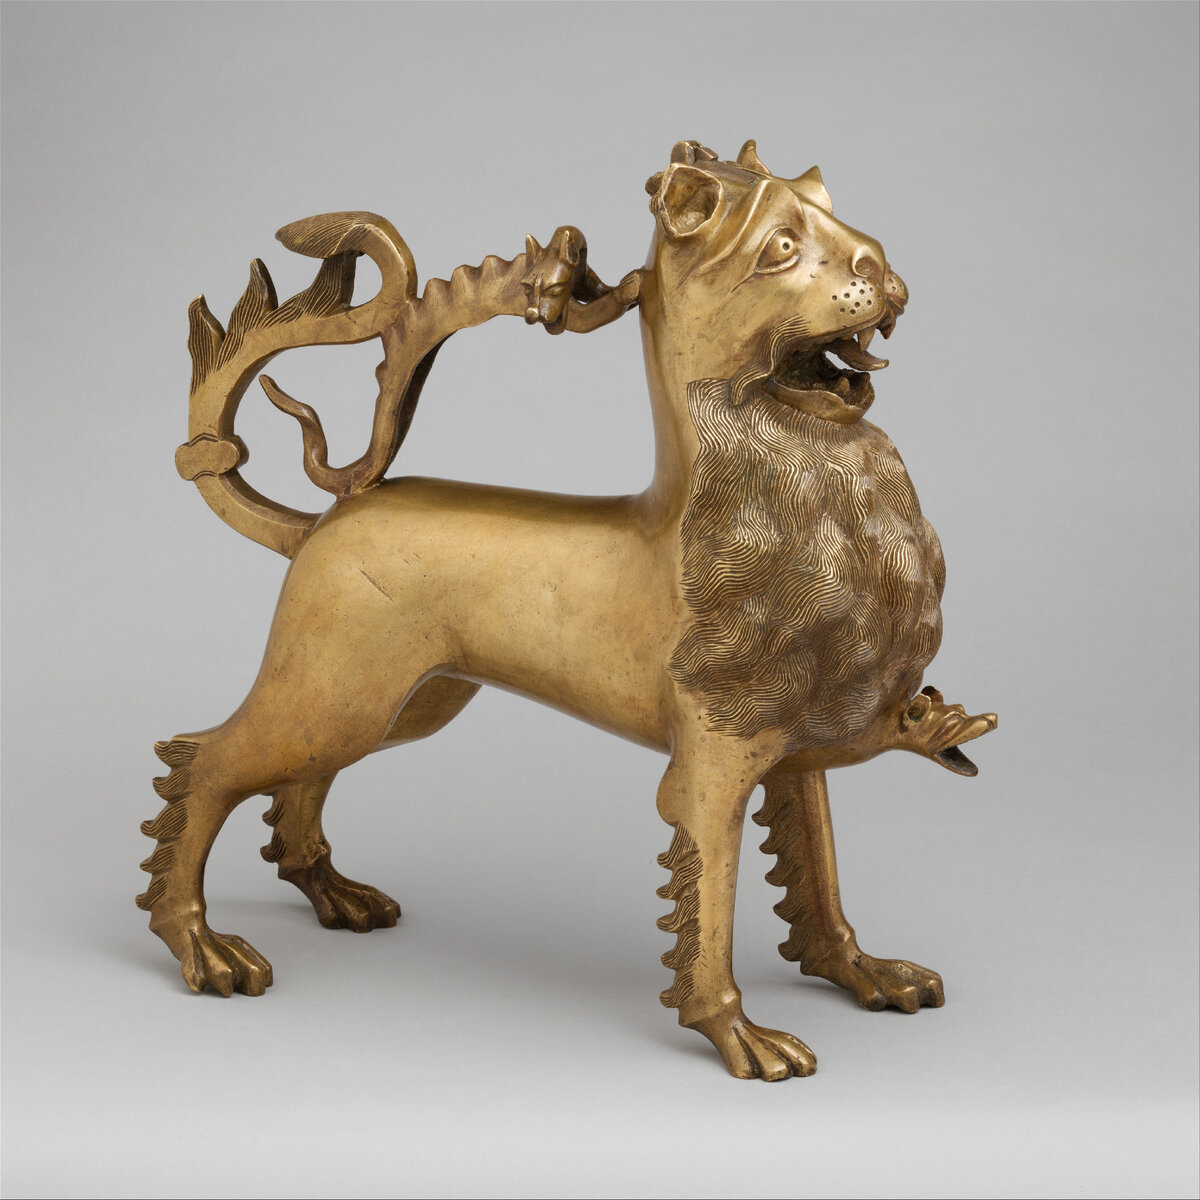 Акваманил "Лев". Германия. Около 1400 года. Музей Метрополитен, Нью-Йорк